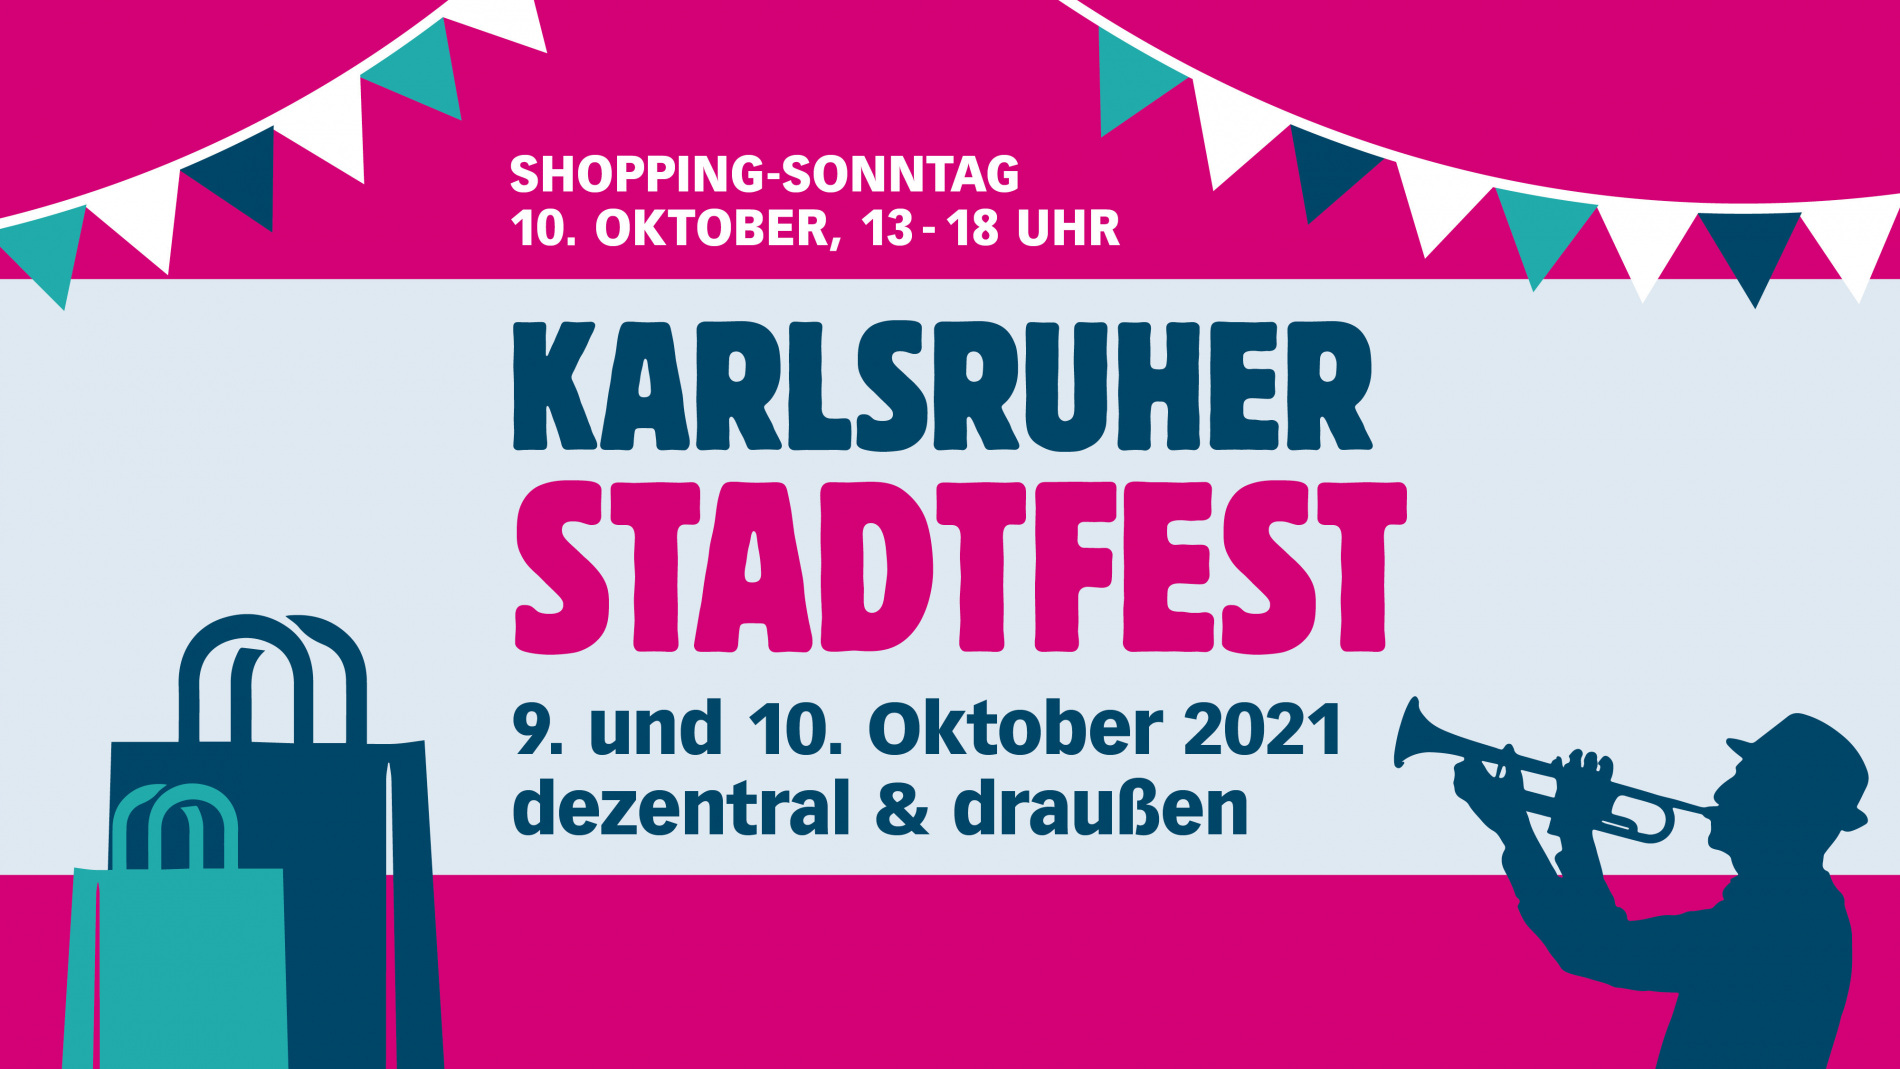 Karlsruhe feiert sein Stadtfest – dezentral und draußen